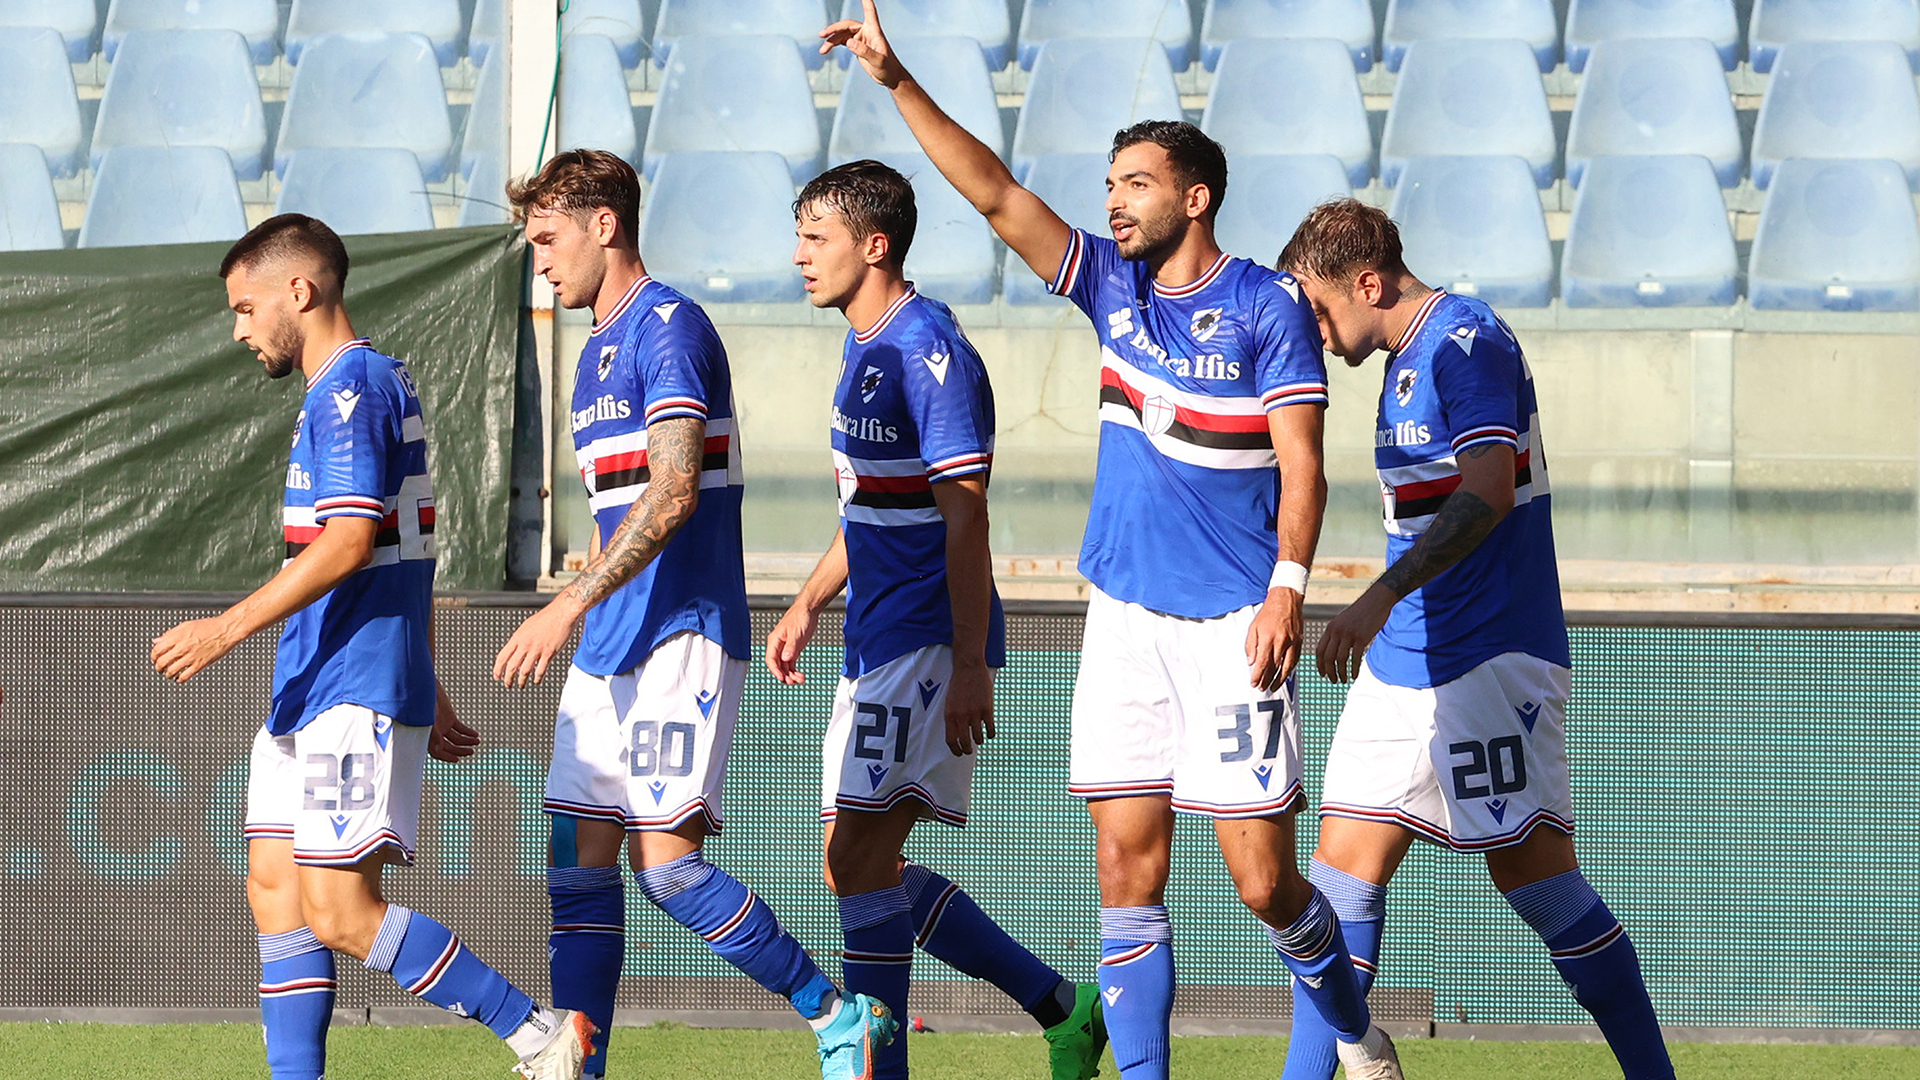 Coppa Italia: Genoa-Reggiana 2-1, Lecce-Parma 2-4, Udinese-Cagliari 1-2